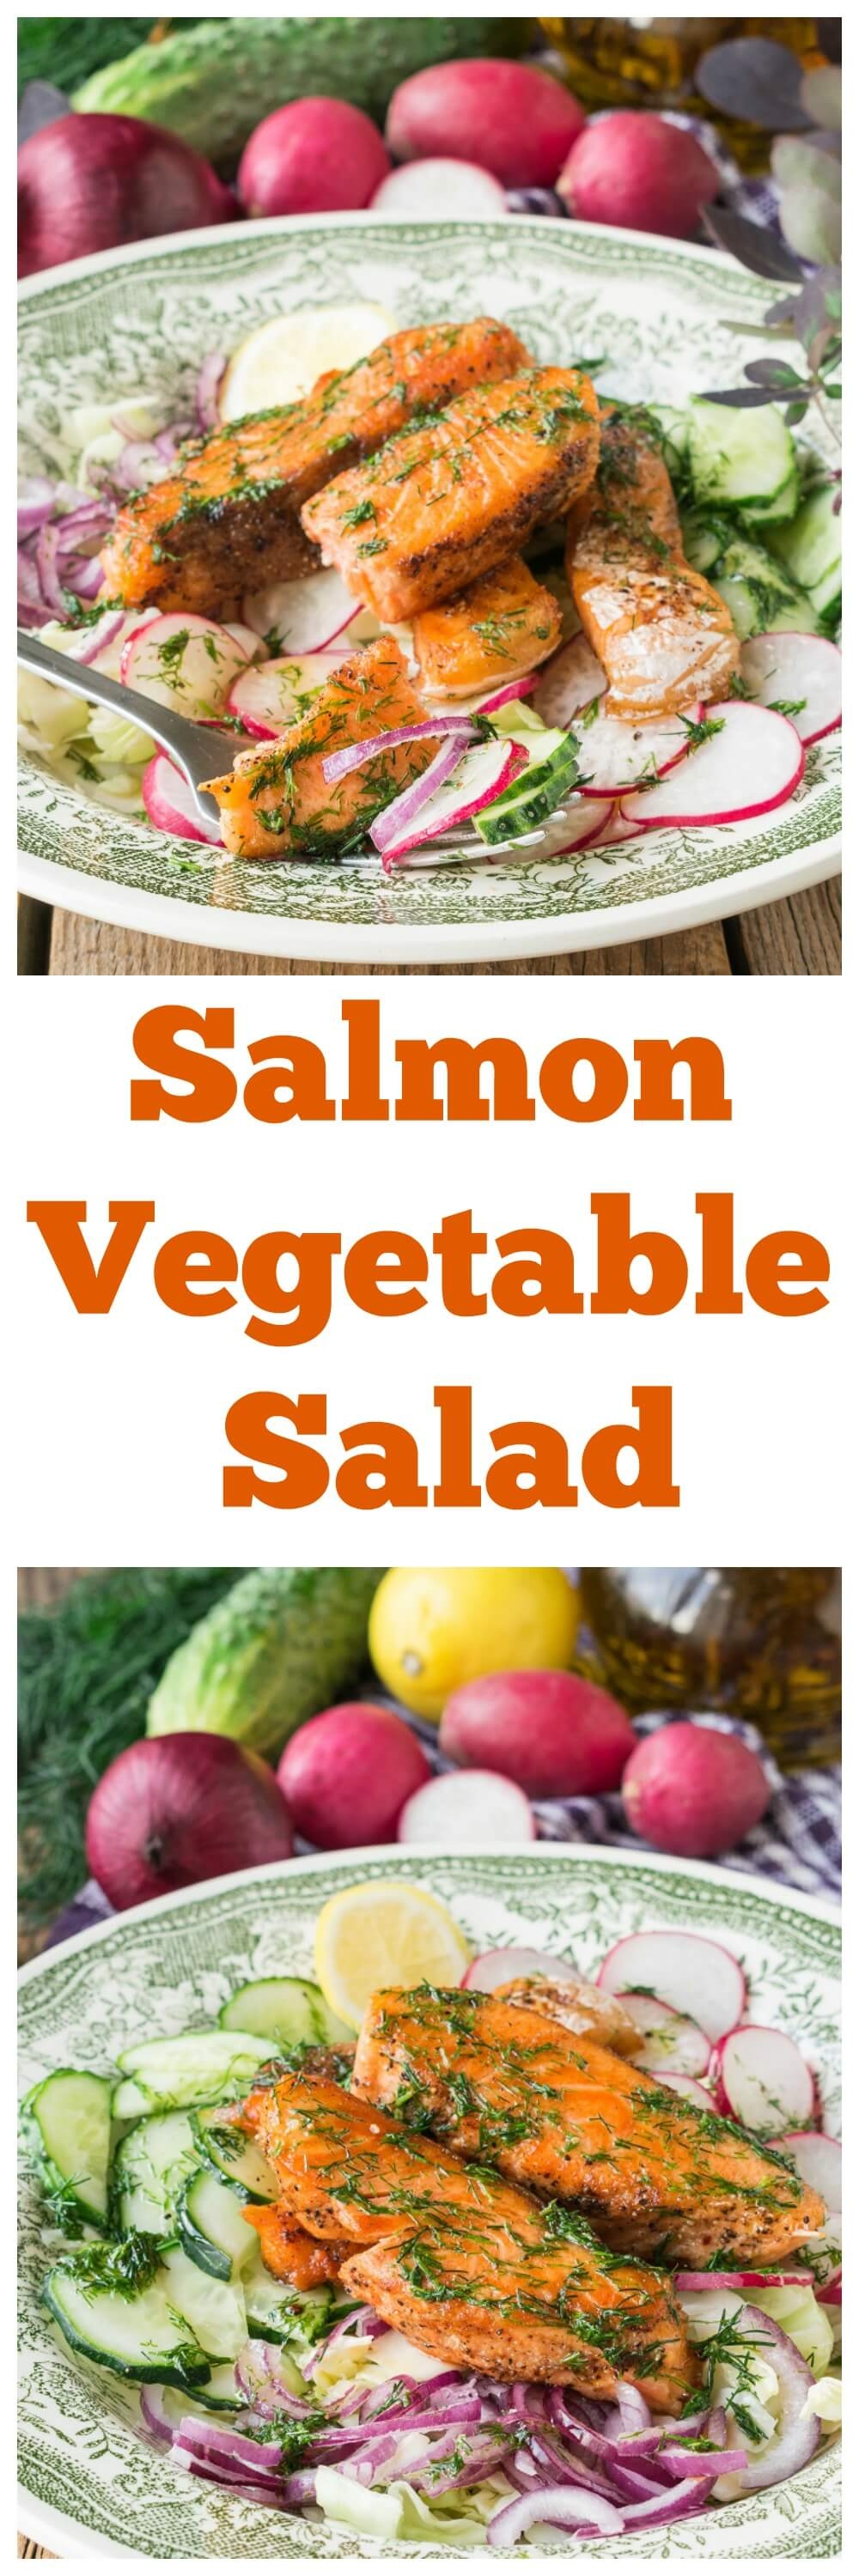 Salmon Vegetable Salad